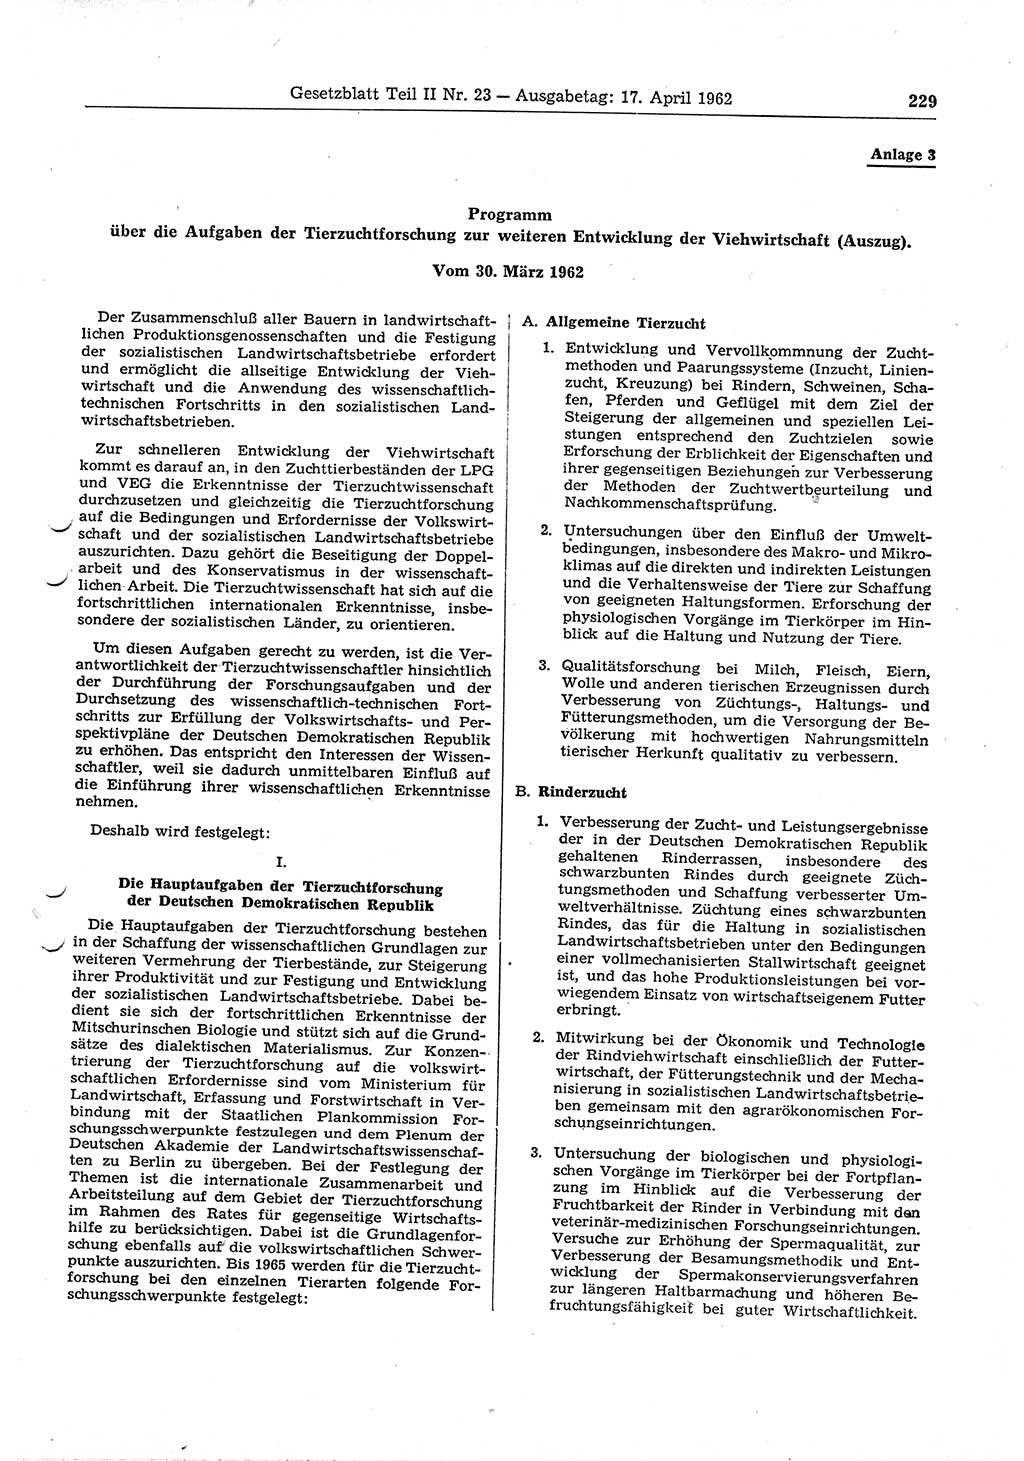 Gesetzblatt (GBl.) der Deutschen Demokratischen Republik (DDR) Teil ⅠⅠ 1962, Seite 229 (GBl. DDR ⅠⅠ 1962, S. 229)